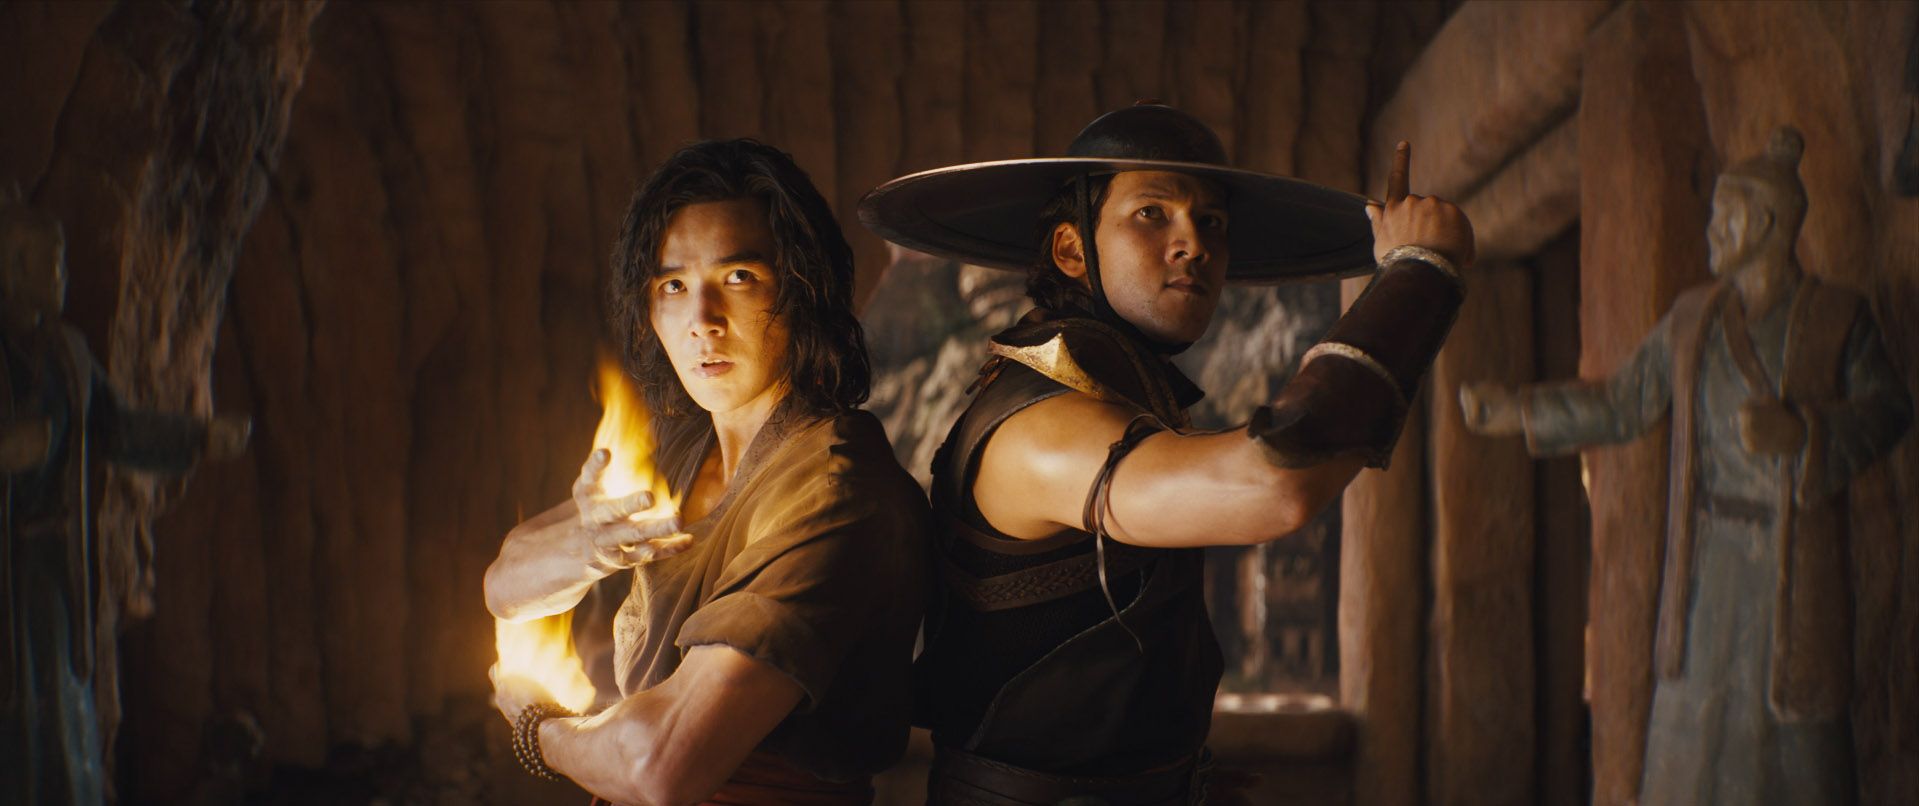 Liu Kang and Kung Lao in Mortal Kombat (2021)